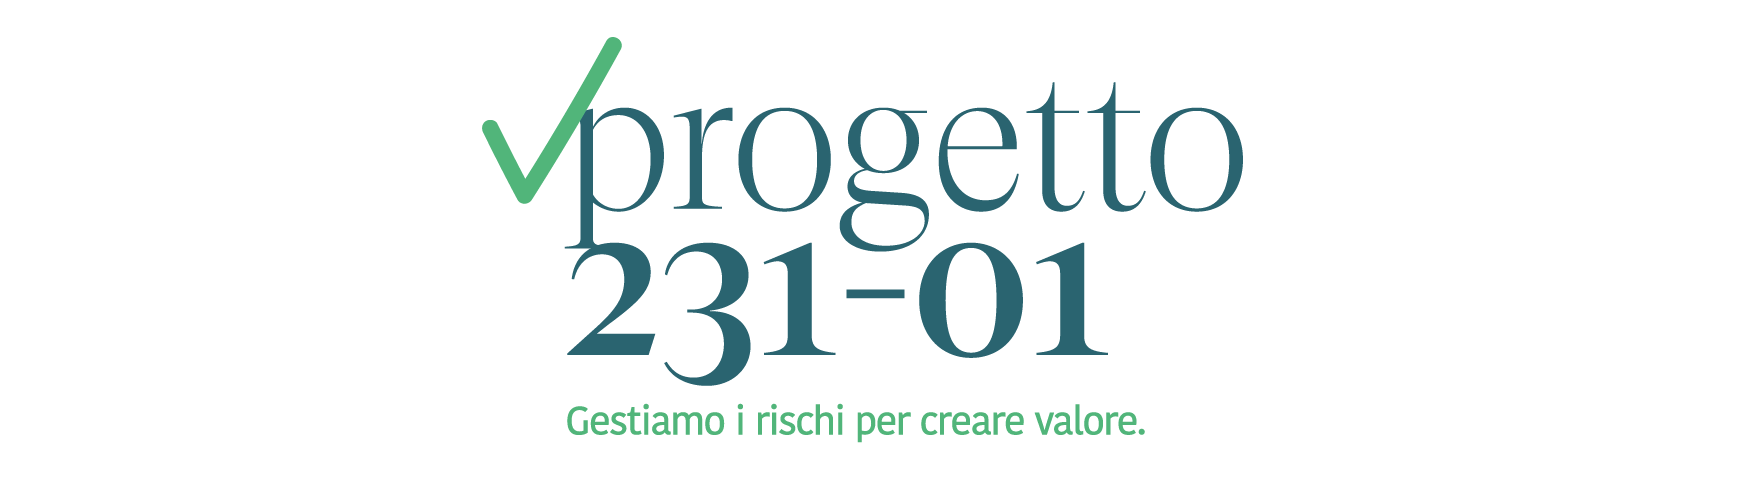 Progetto231-01